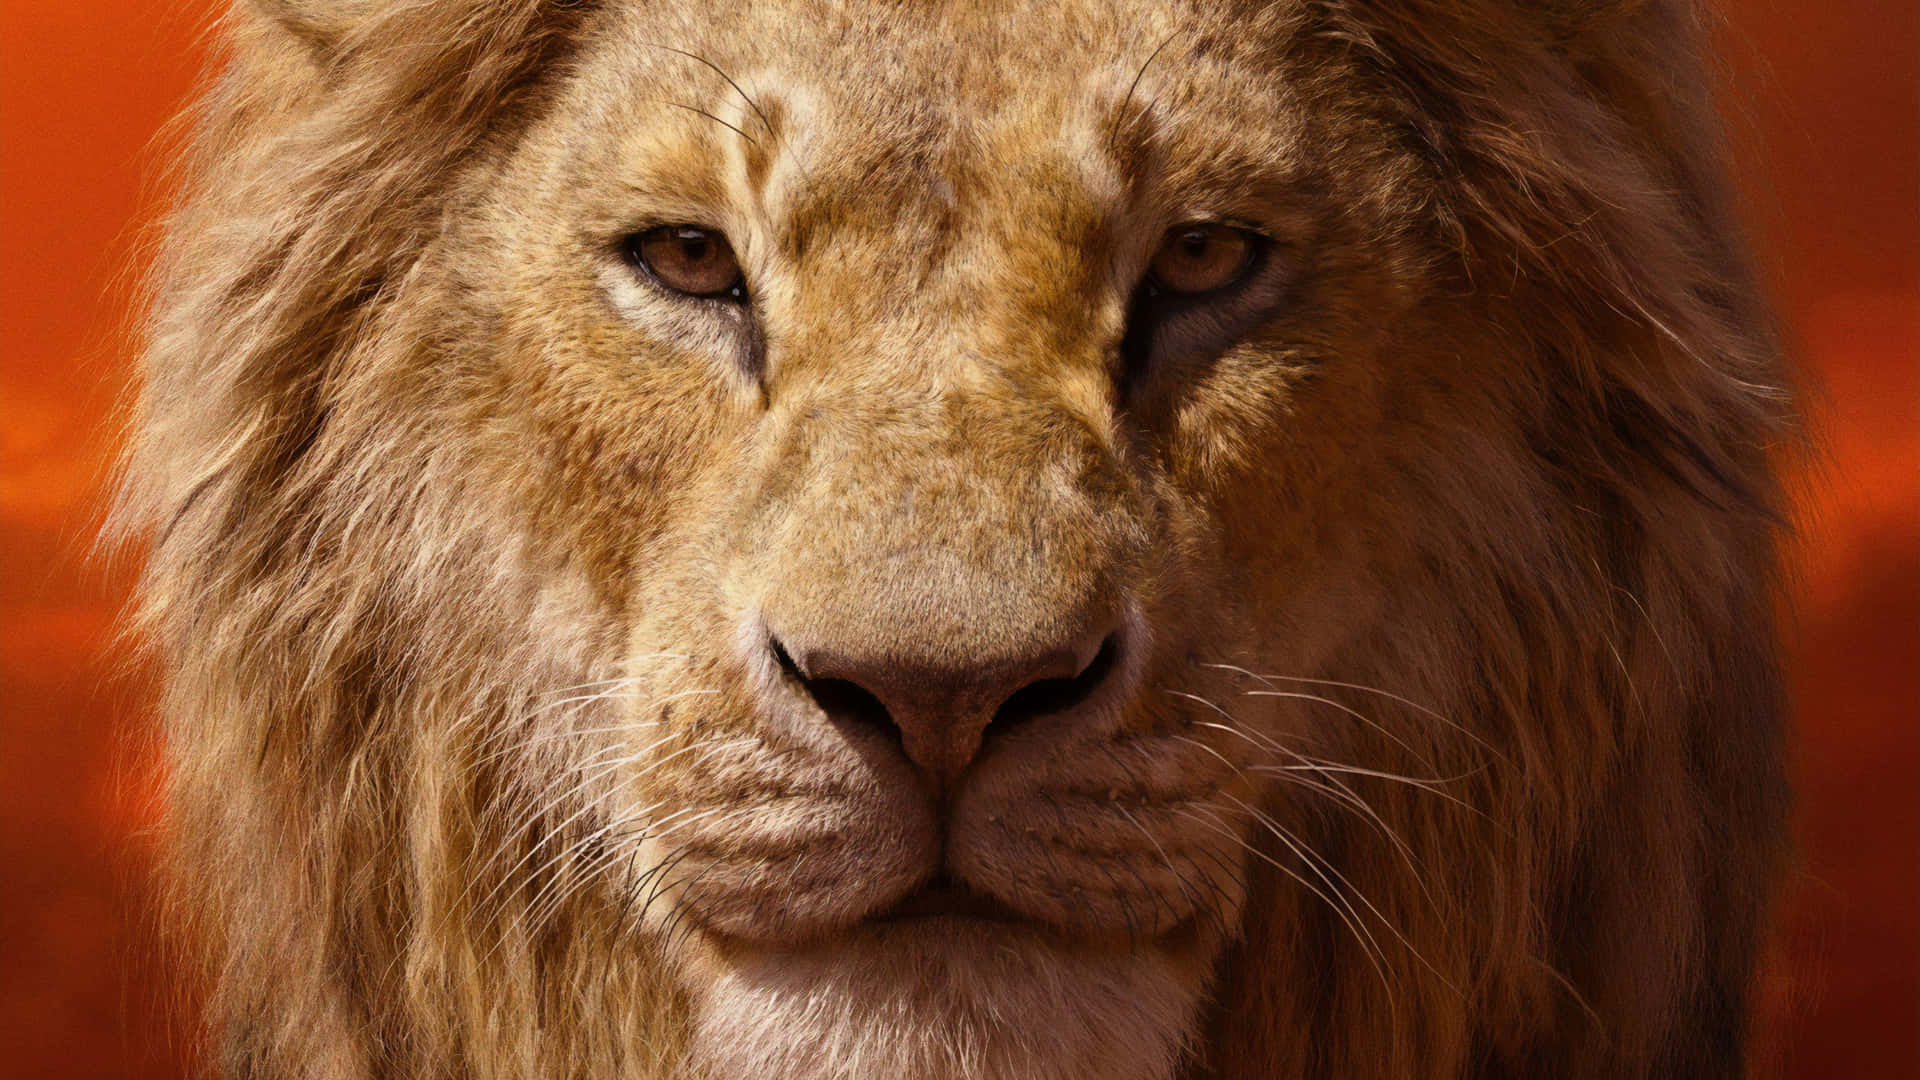 Majestic Lion Portrait Wallpaper